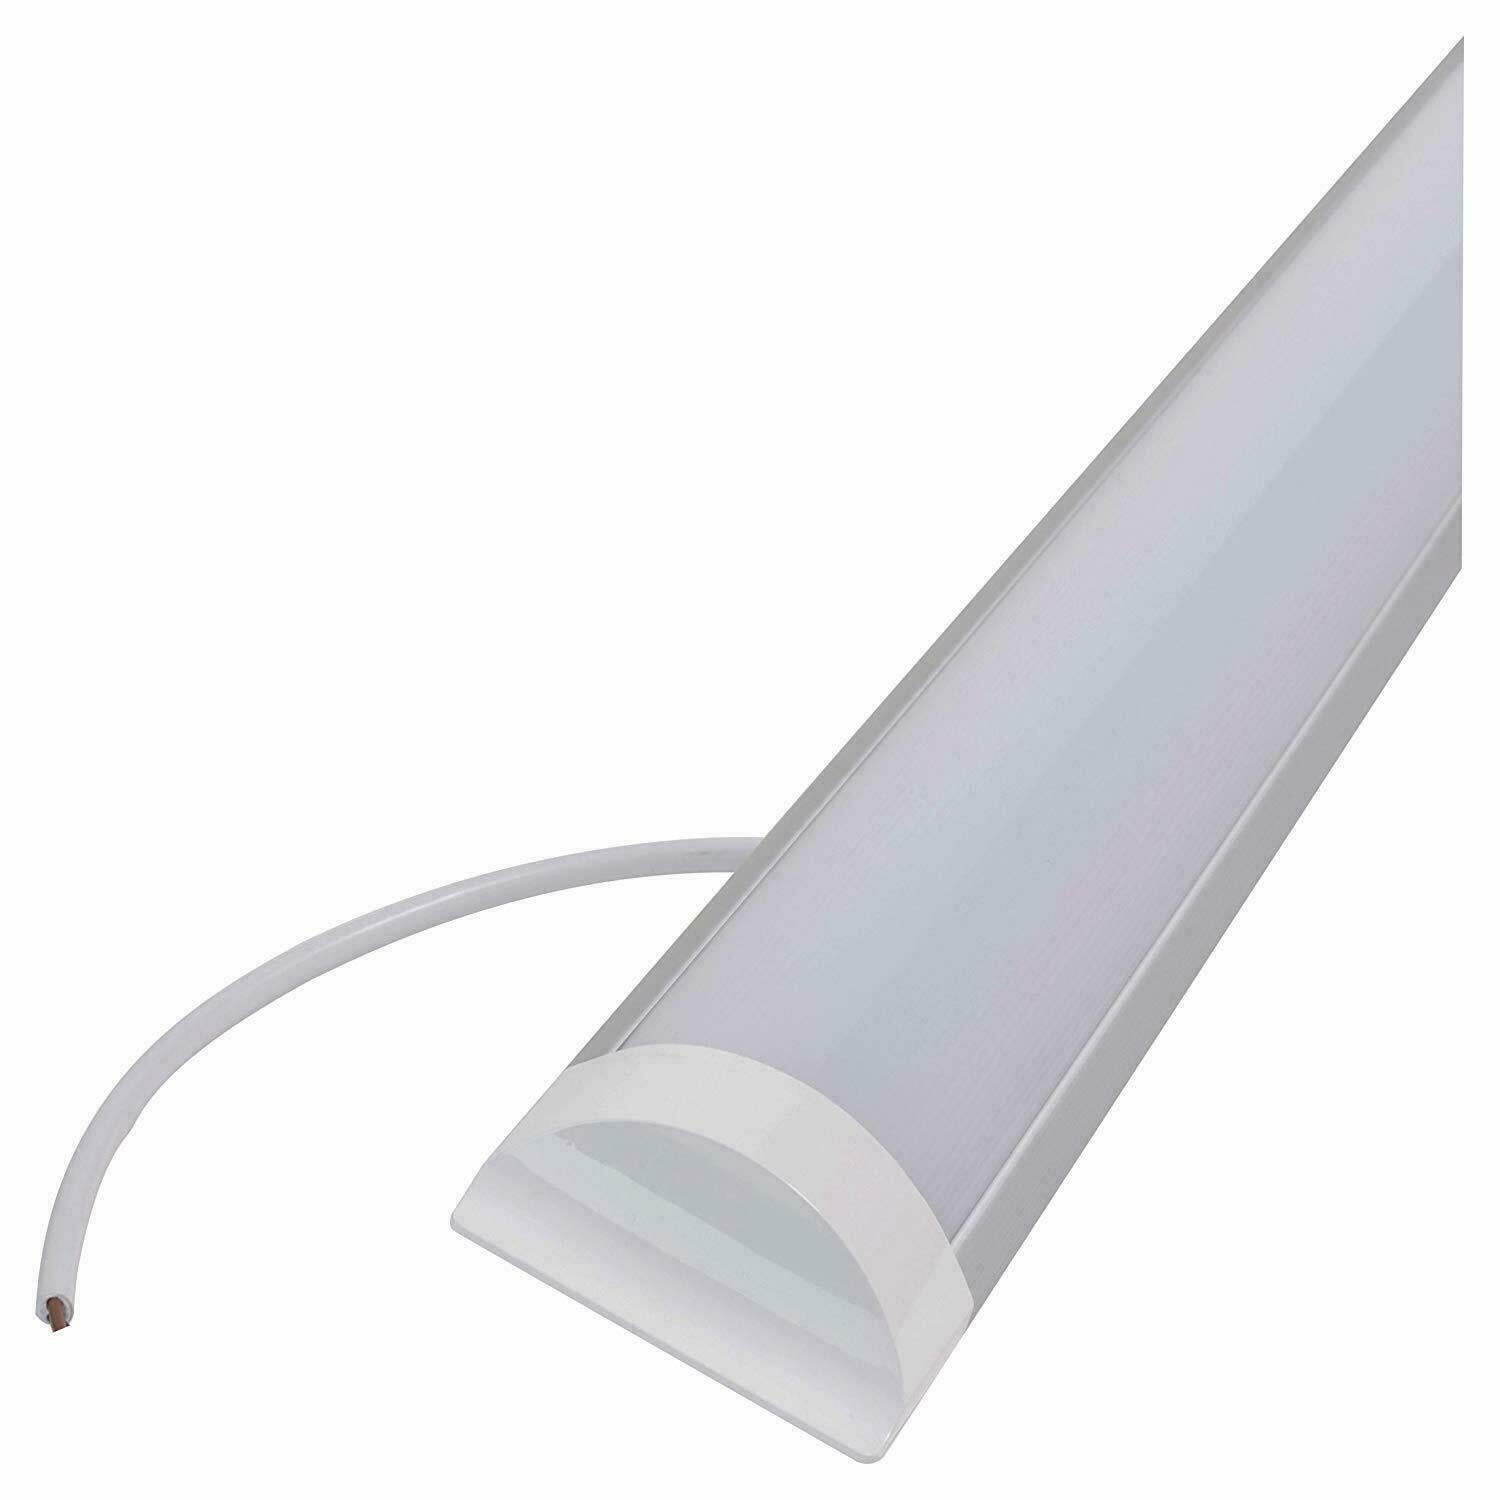 Bright ceiling lights LED batten linear tube 3ft surface mount UKEW®